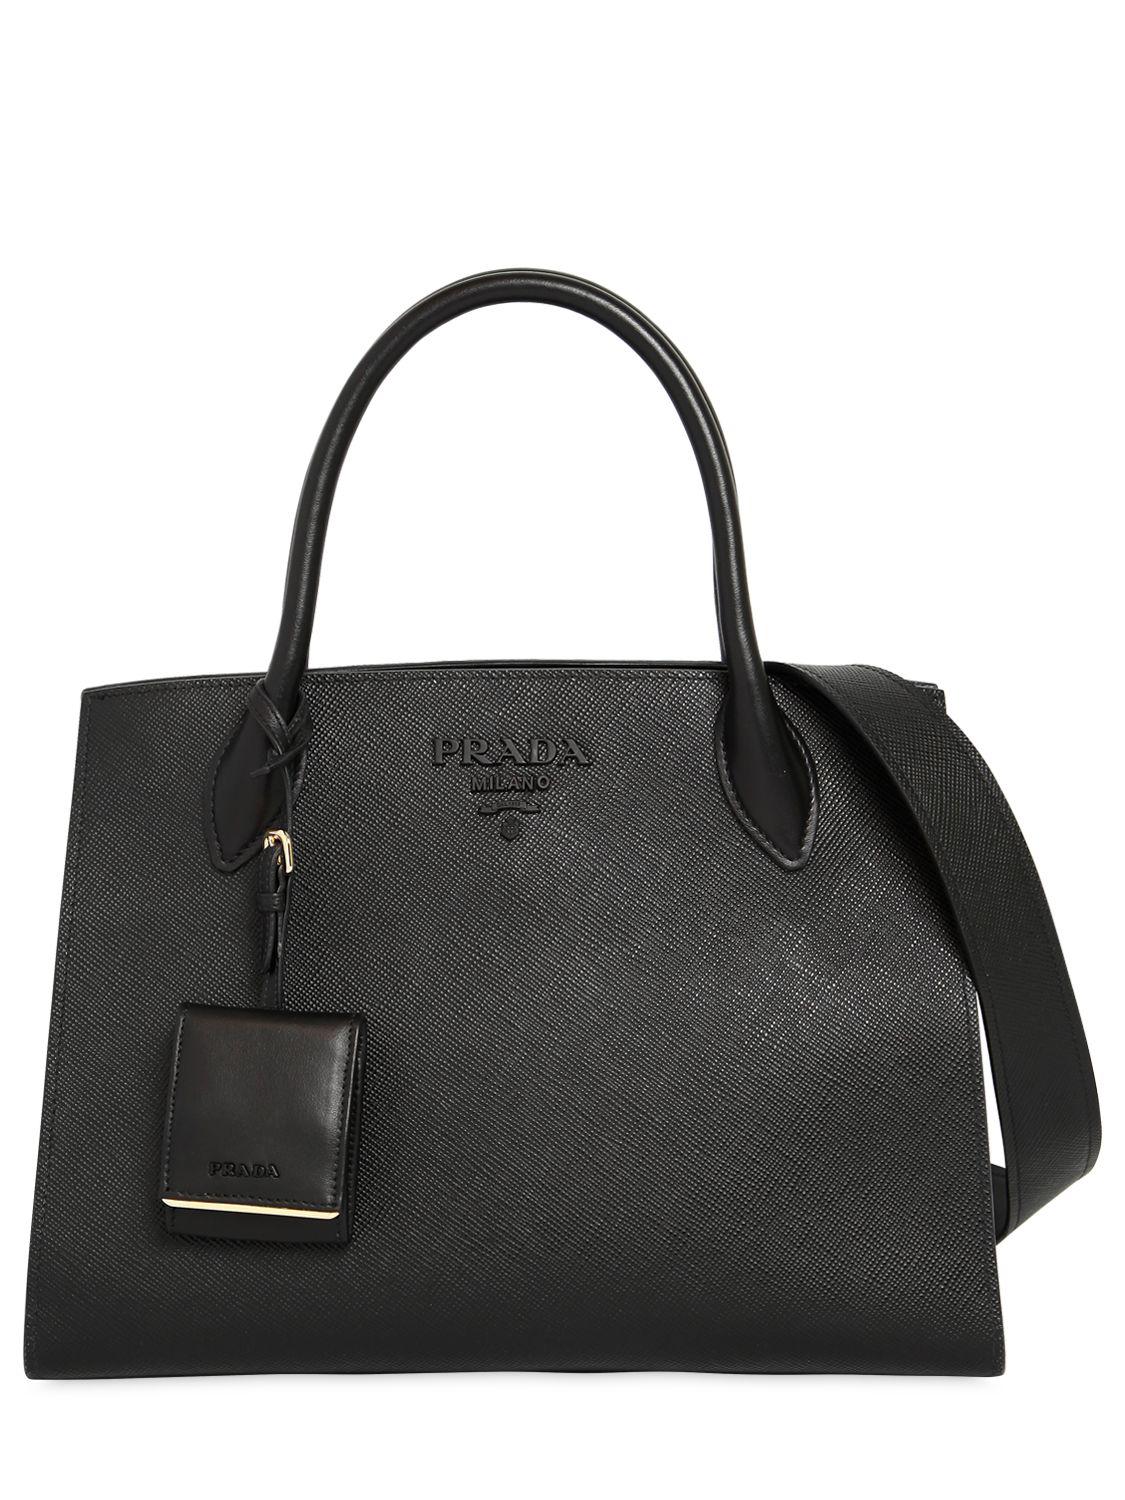 medium saffiano leather prada monochrome bag